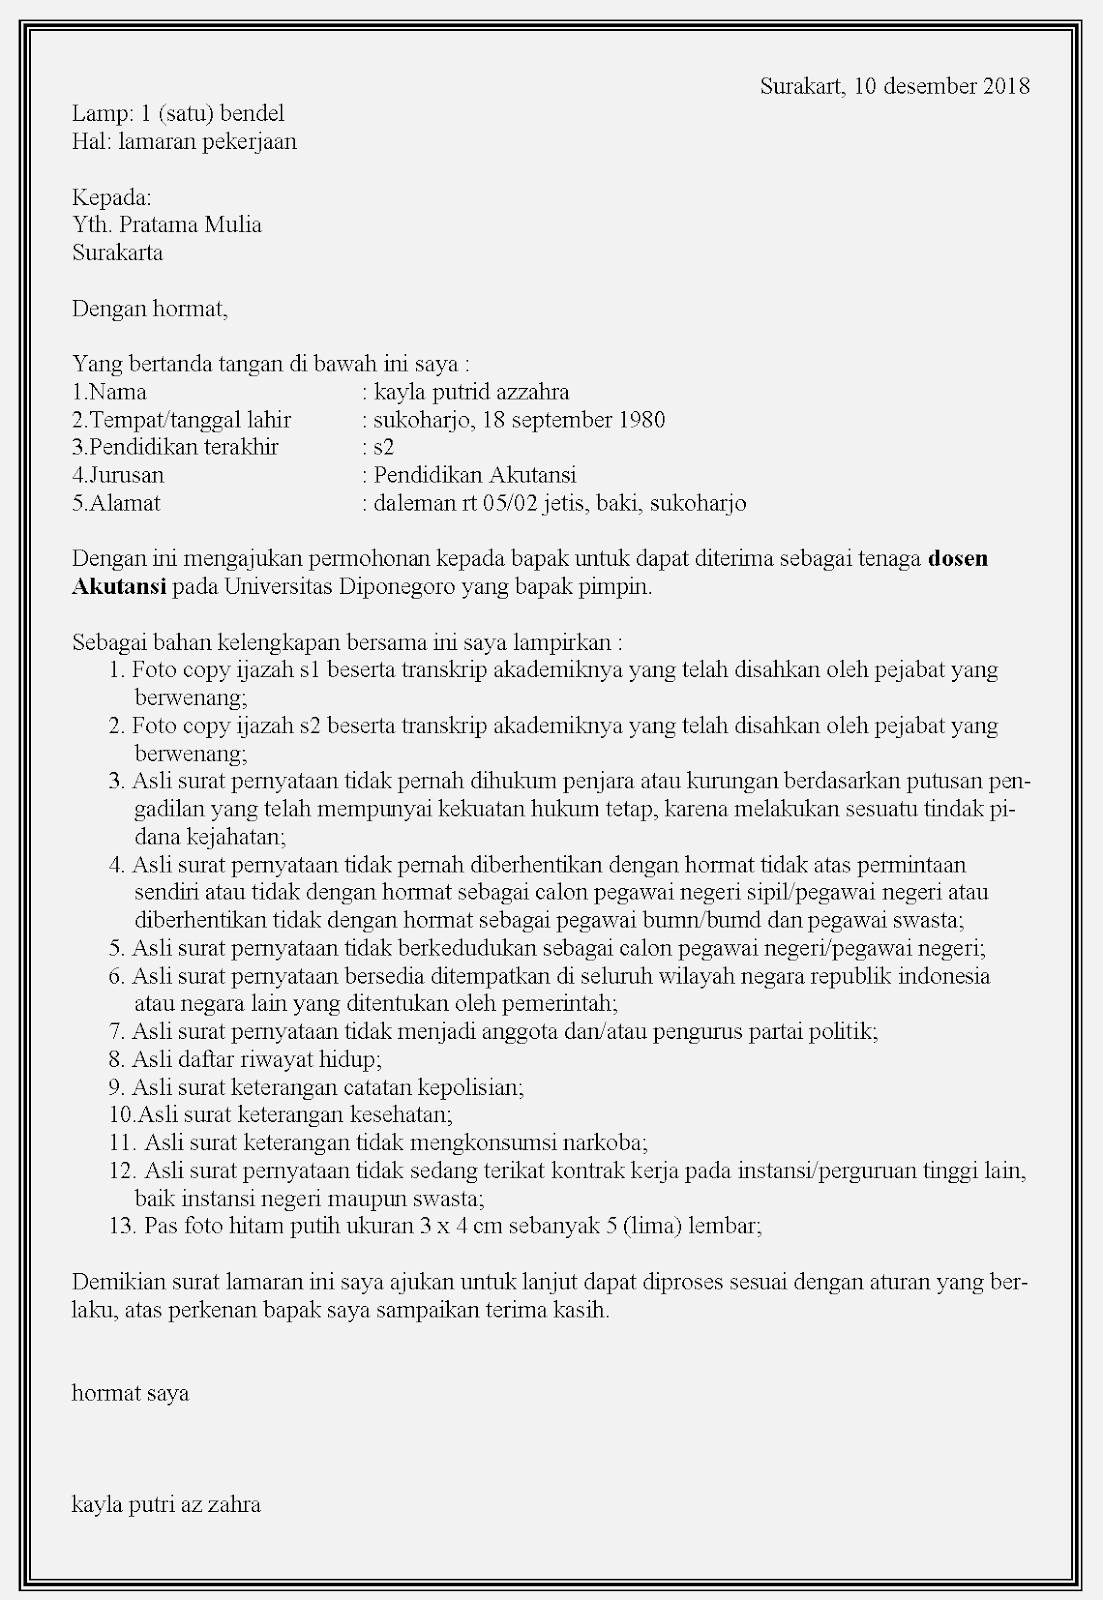 Contoh surat lamaran kerja dosen di Pratama mulia Surakarta